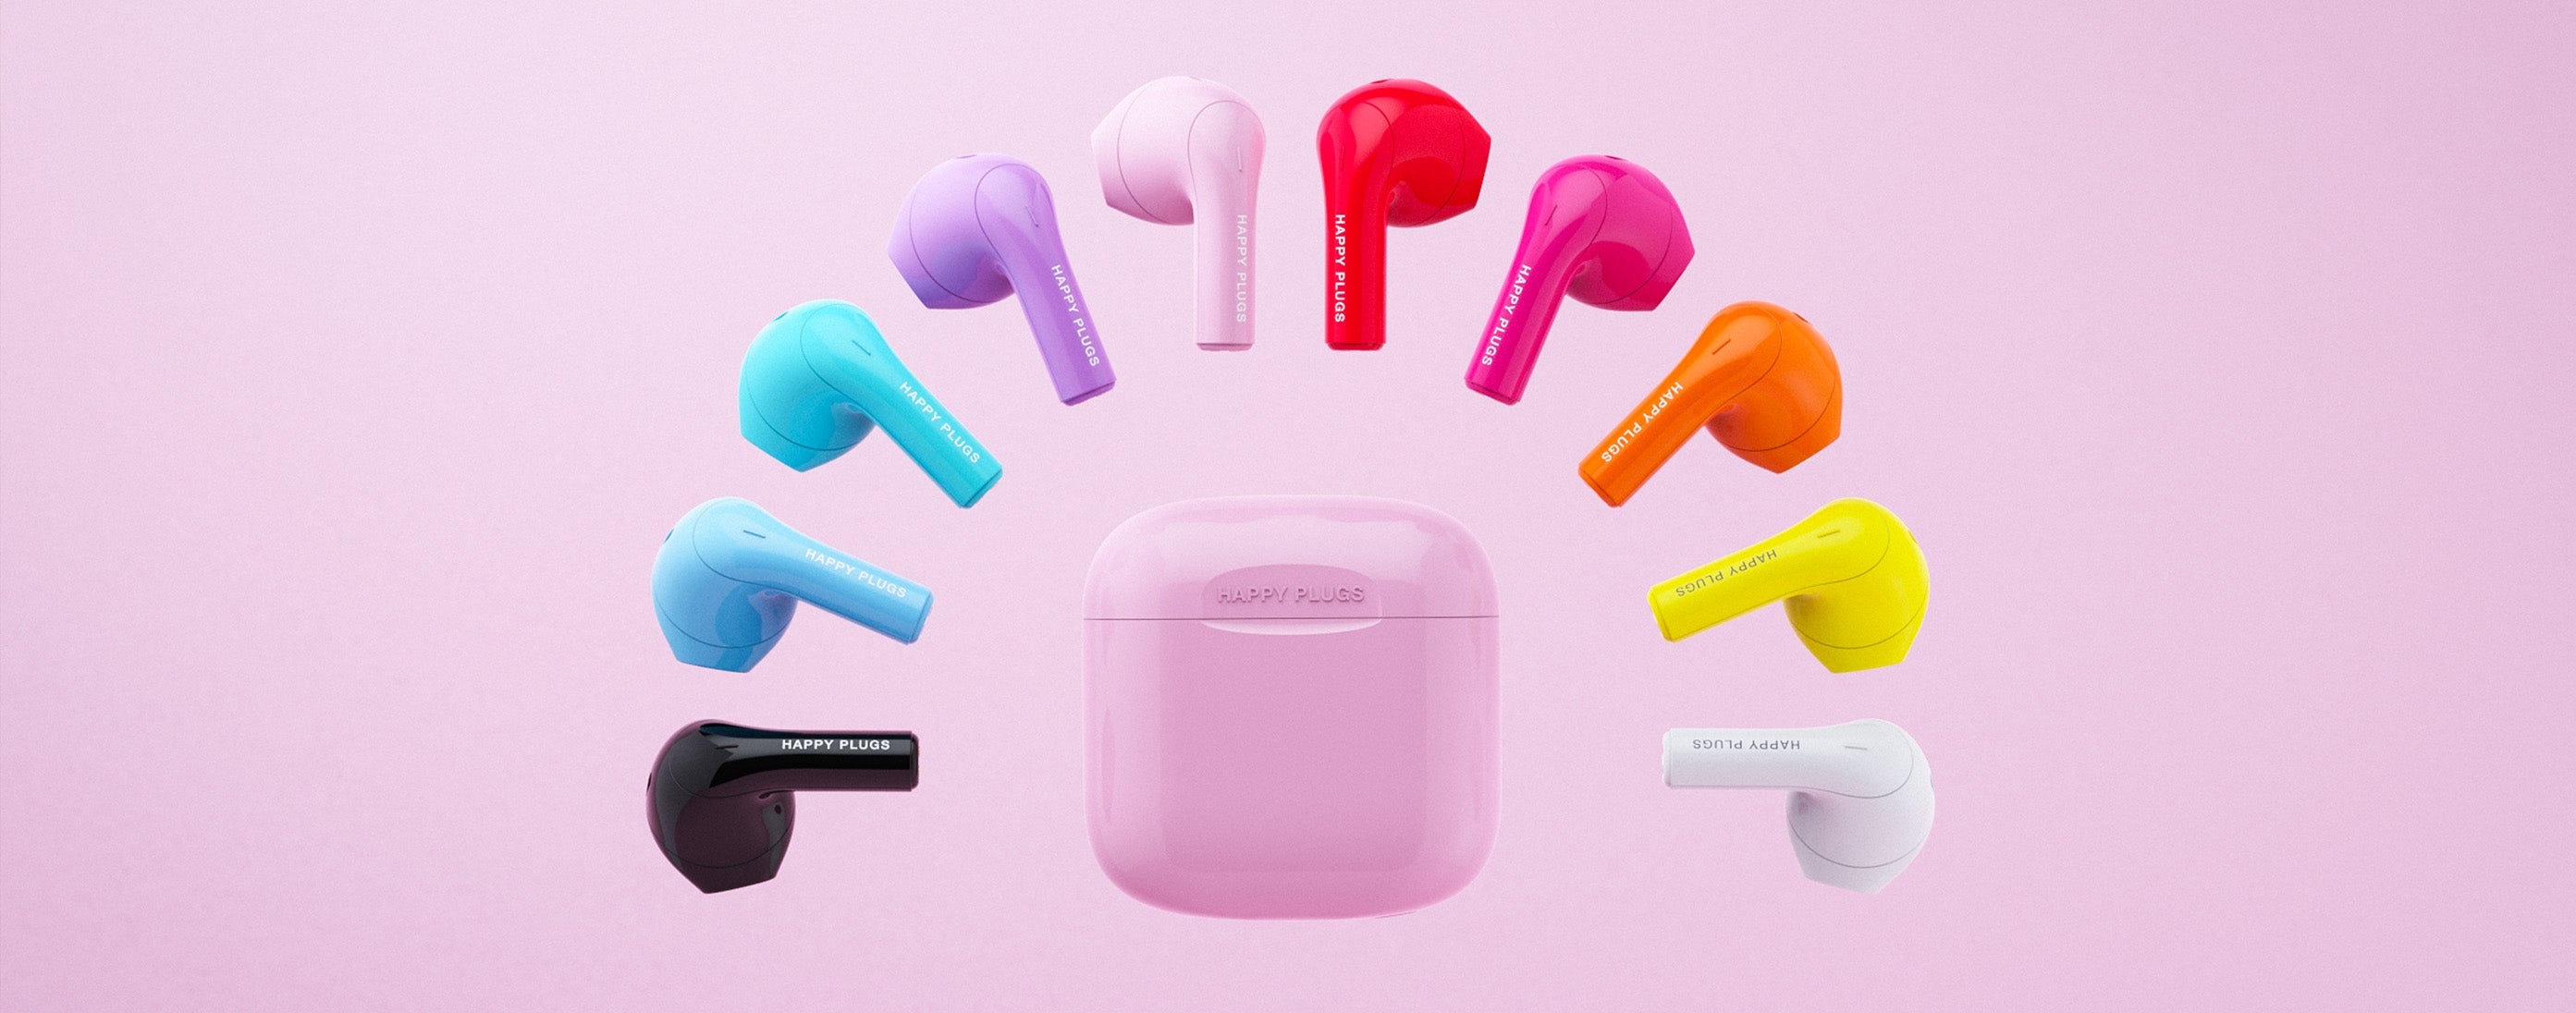 Happy Plugs Joy - 10 vibrant colors headphones